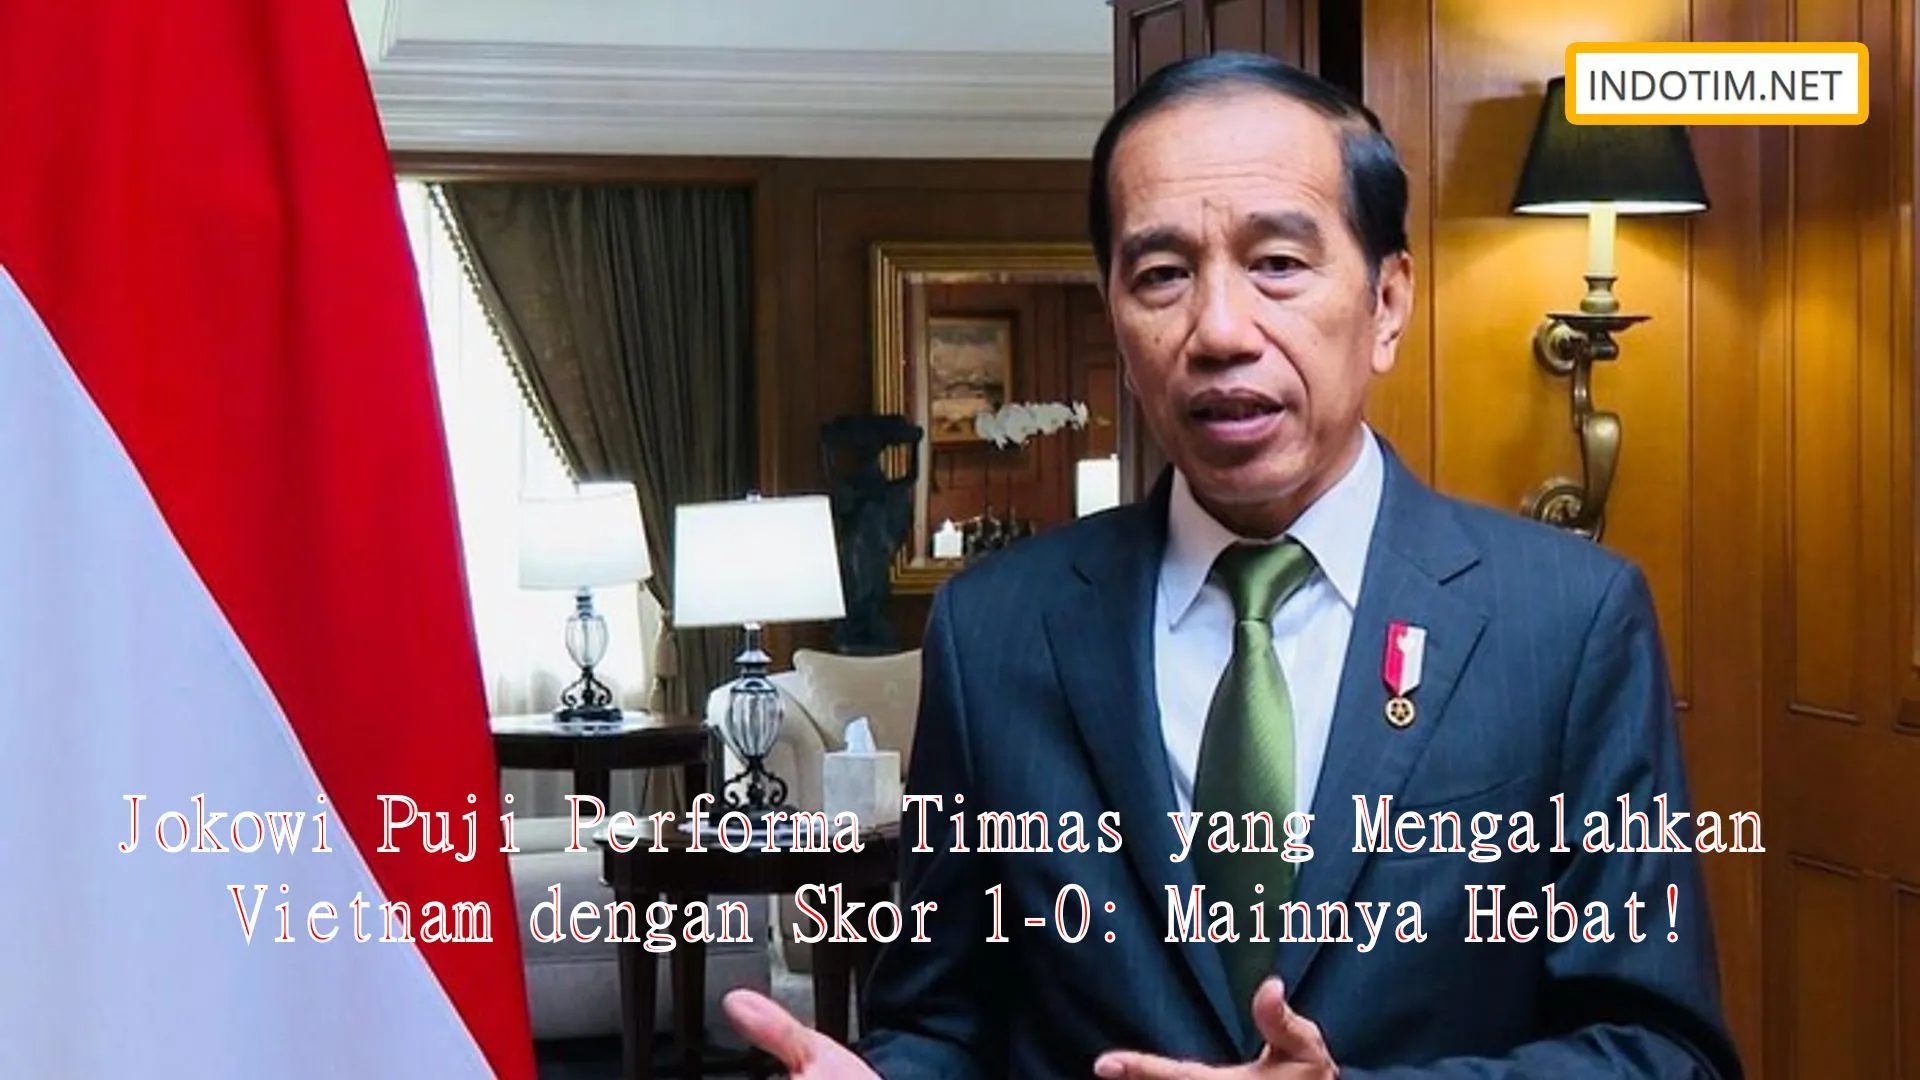 Jokowi Puji Performa Timnas yang Mengalahkan Vietnam dengan Skor 1-0: Mainnya Hebat!